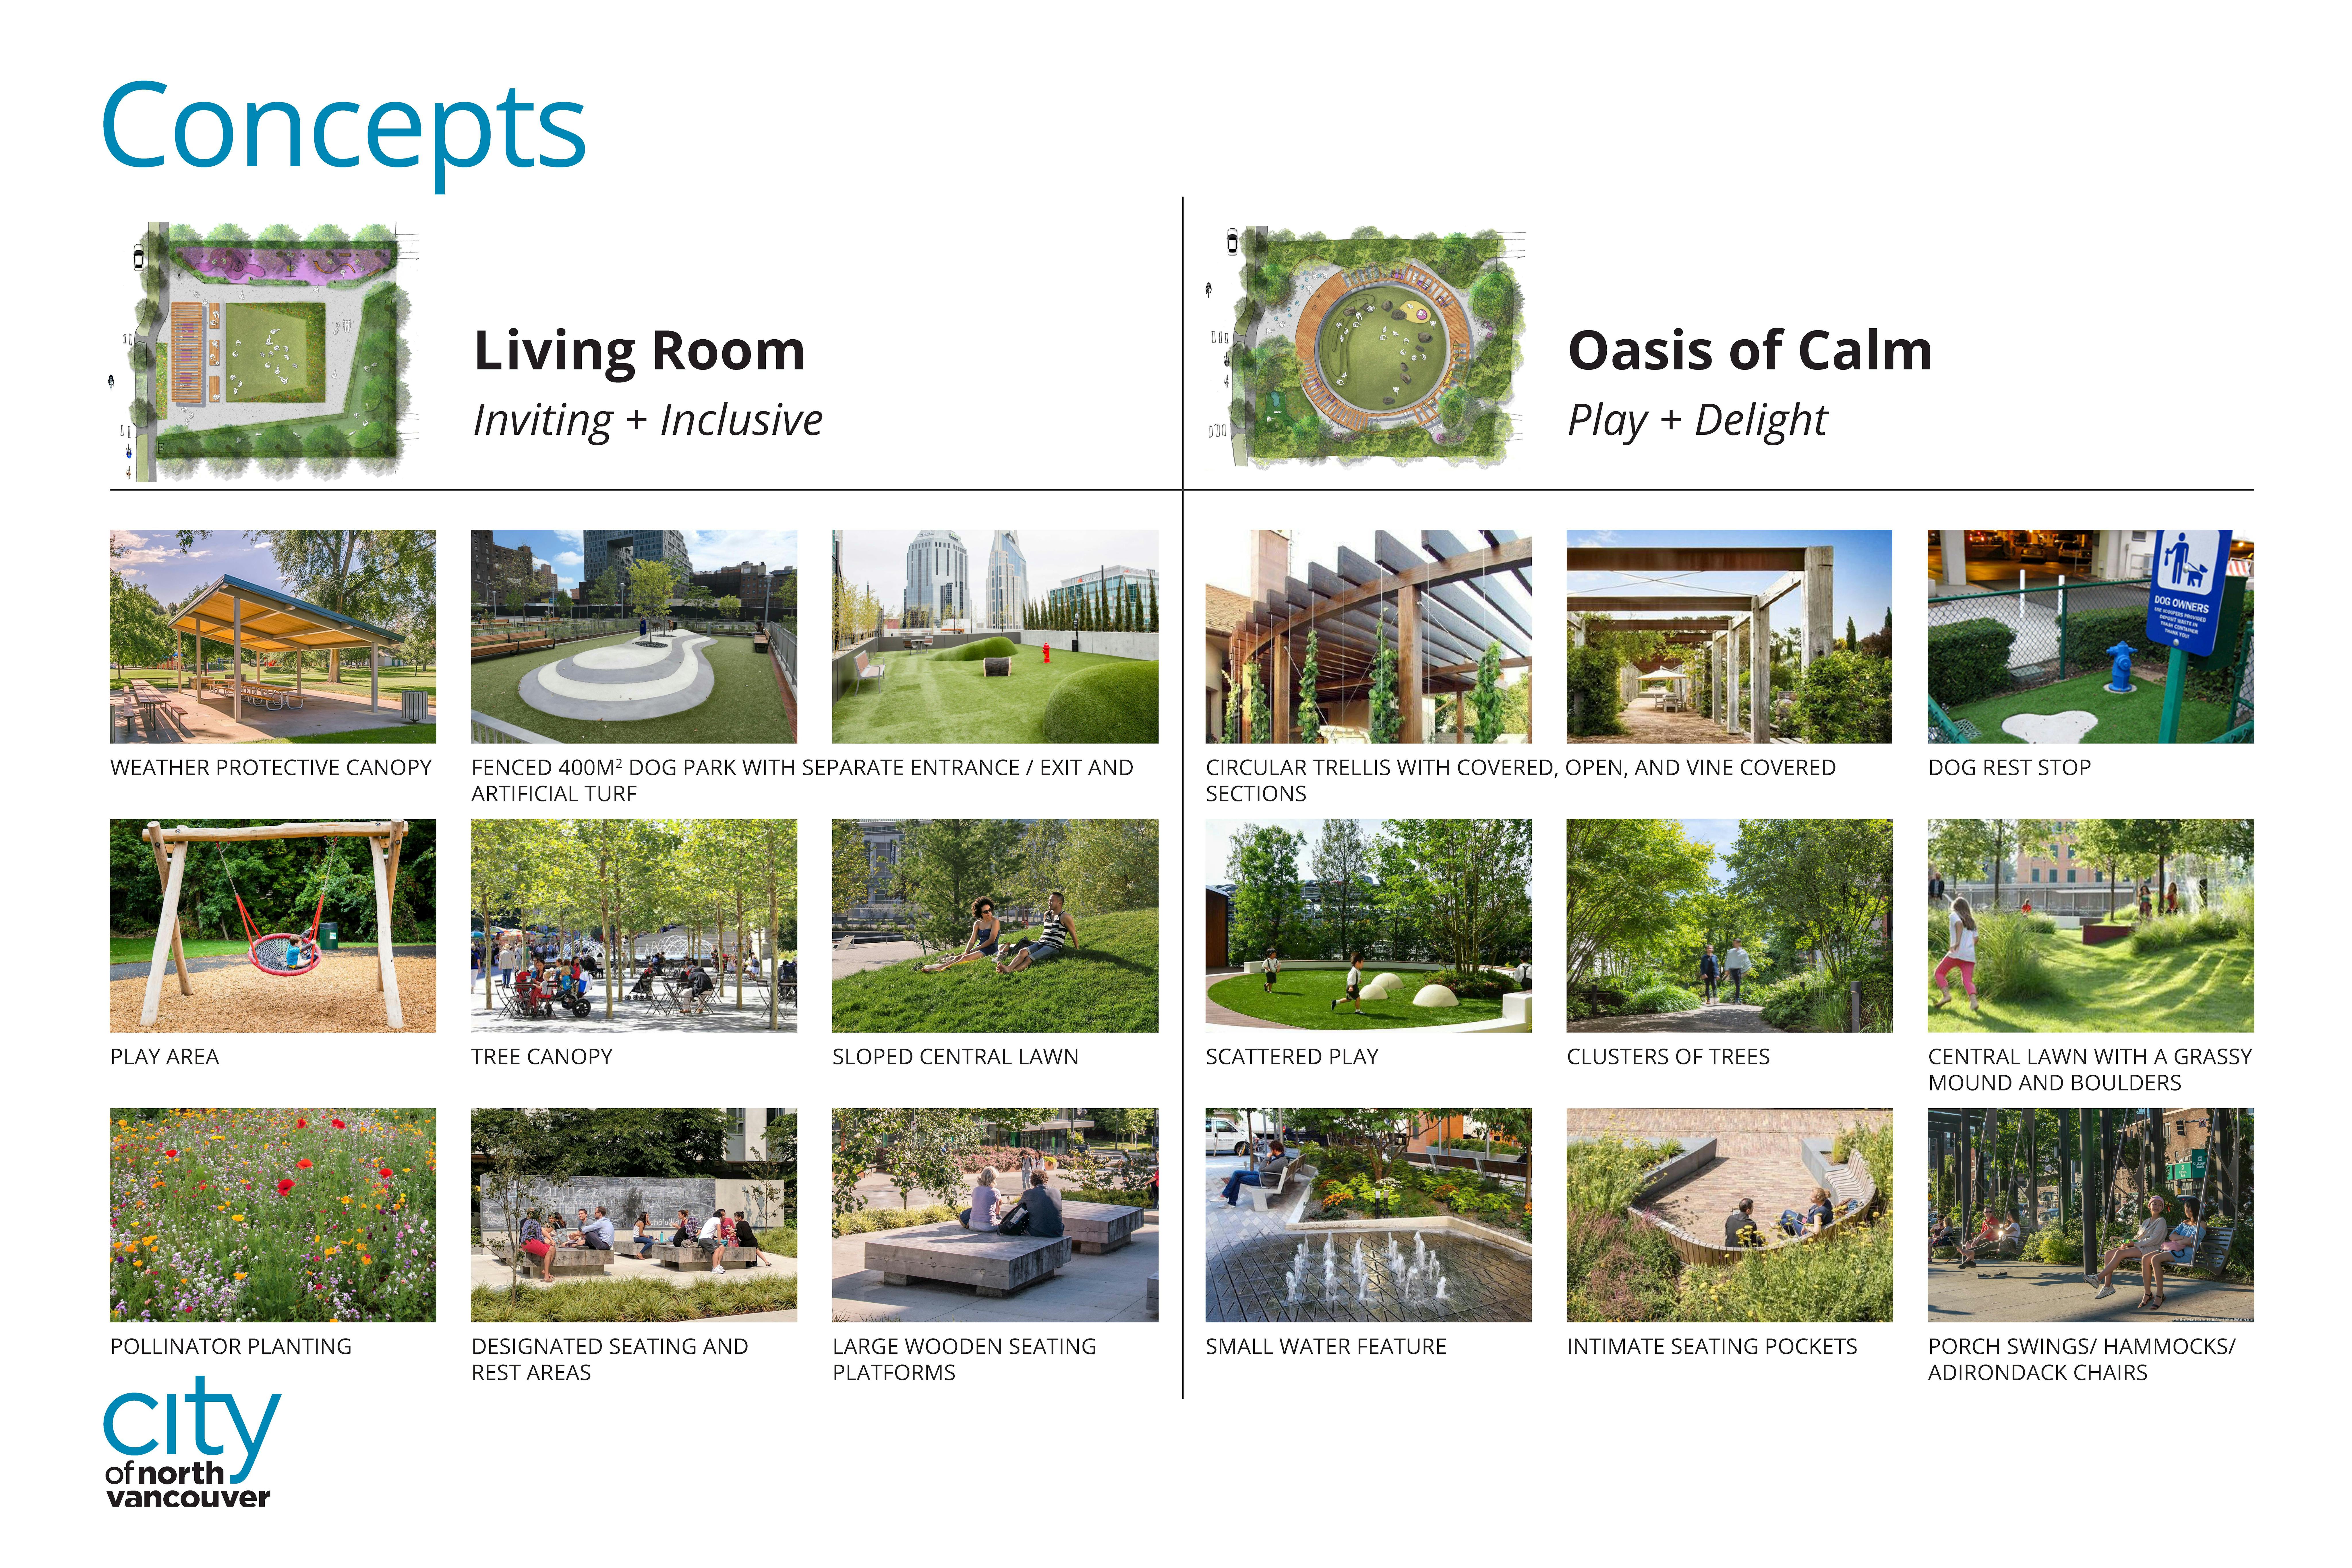 Park Design Concept Features